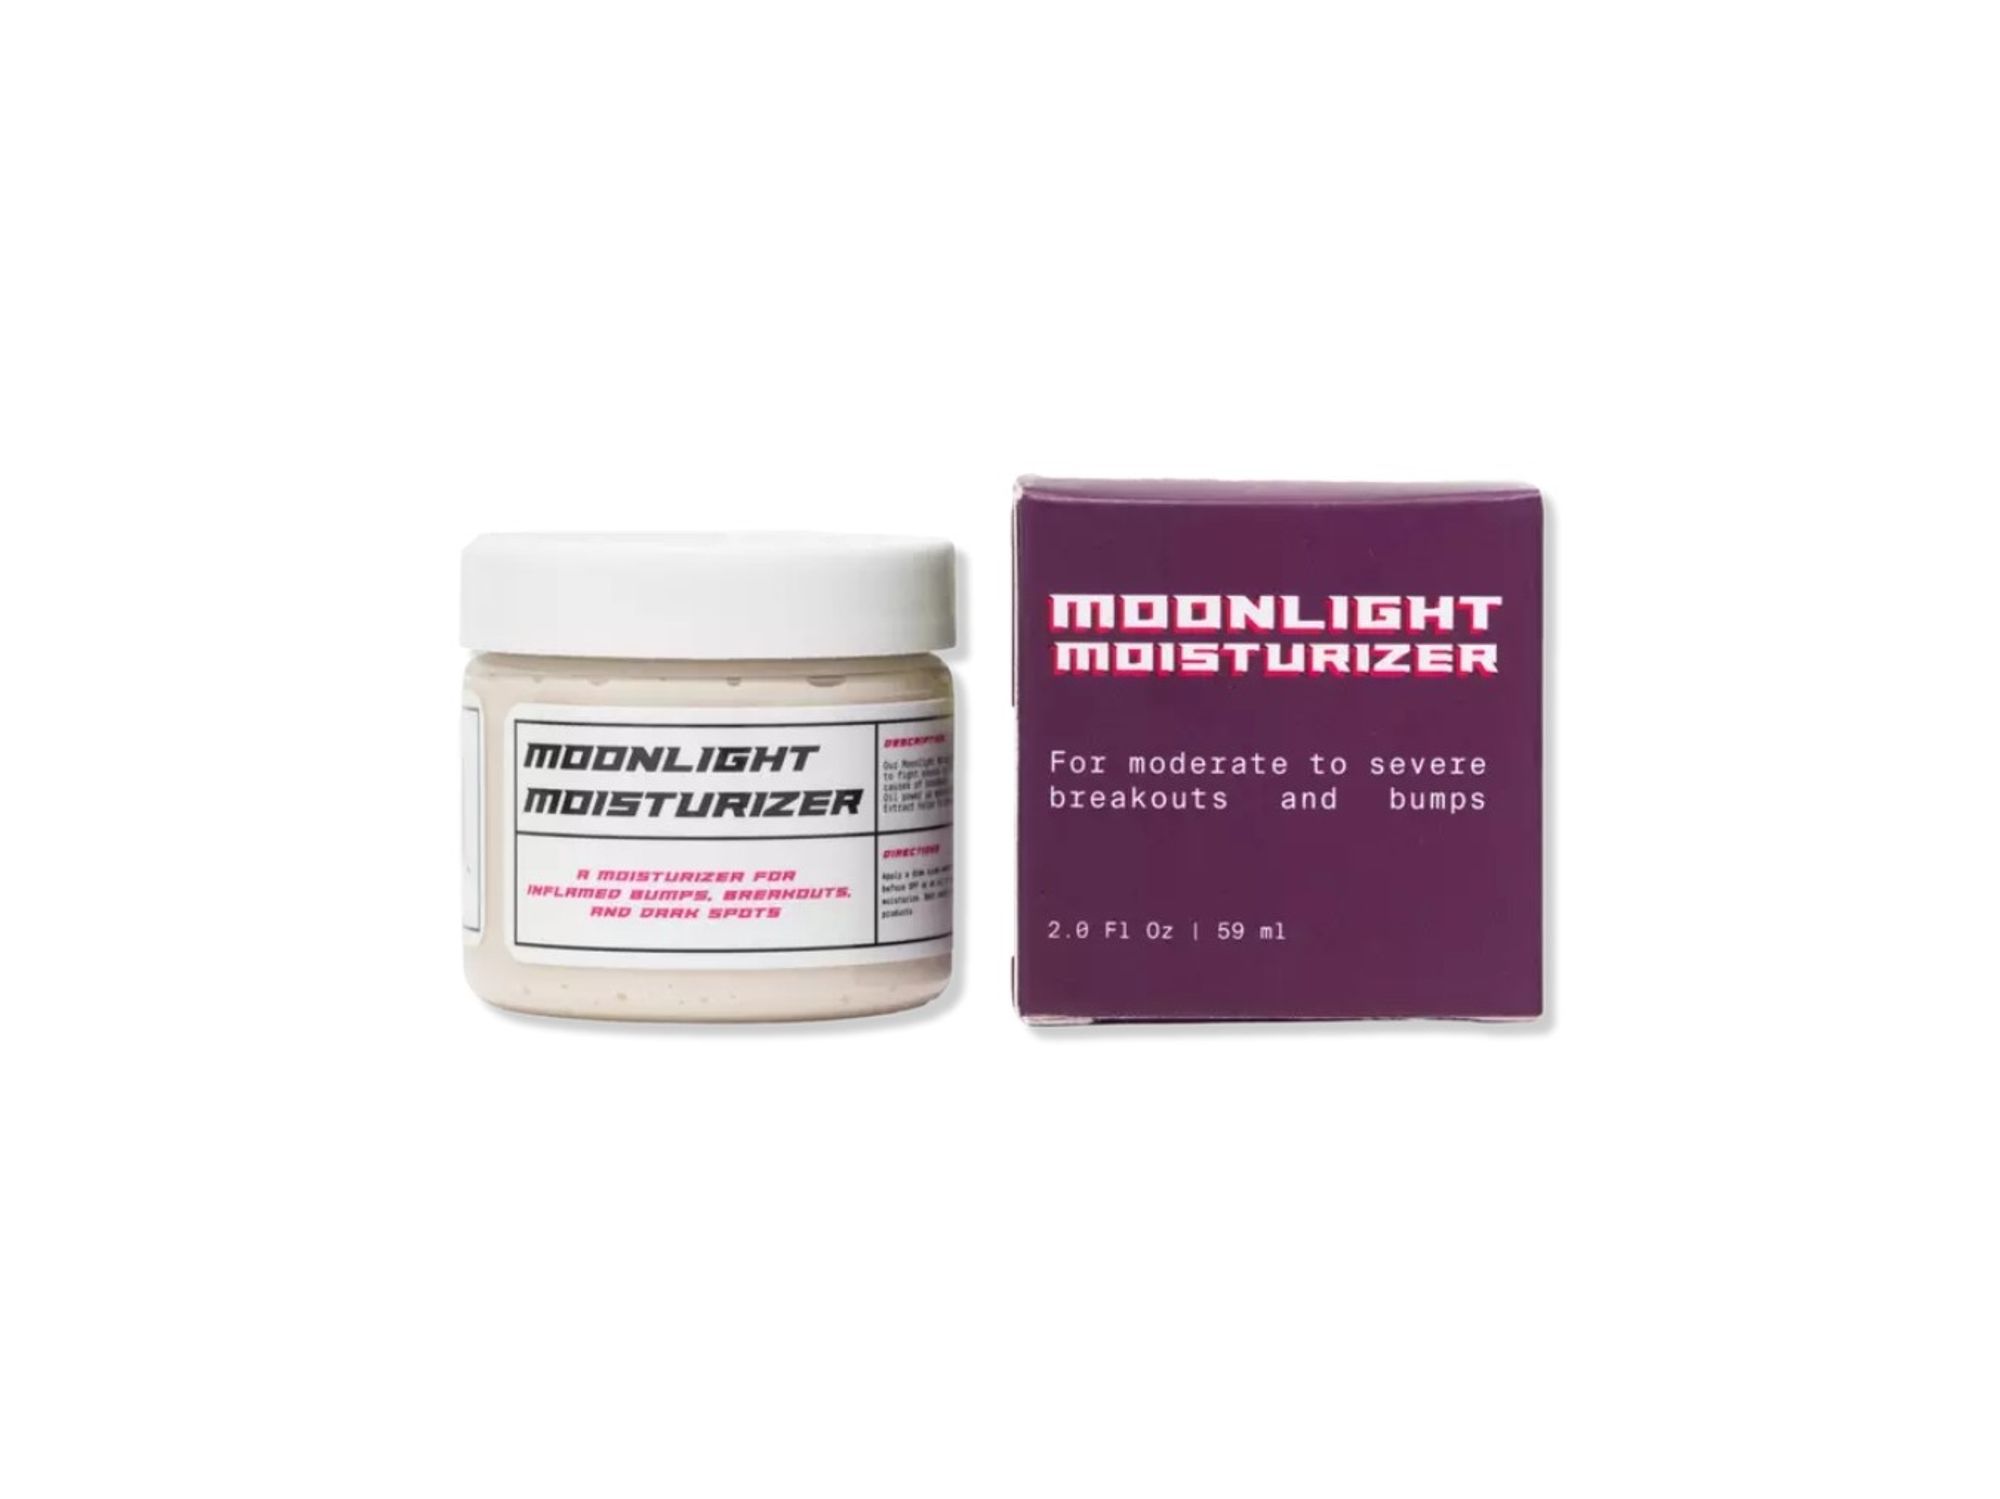 rosen skincare moonlight moisturizer